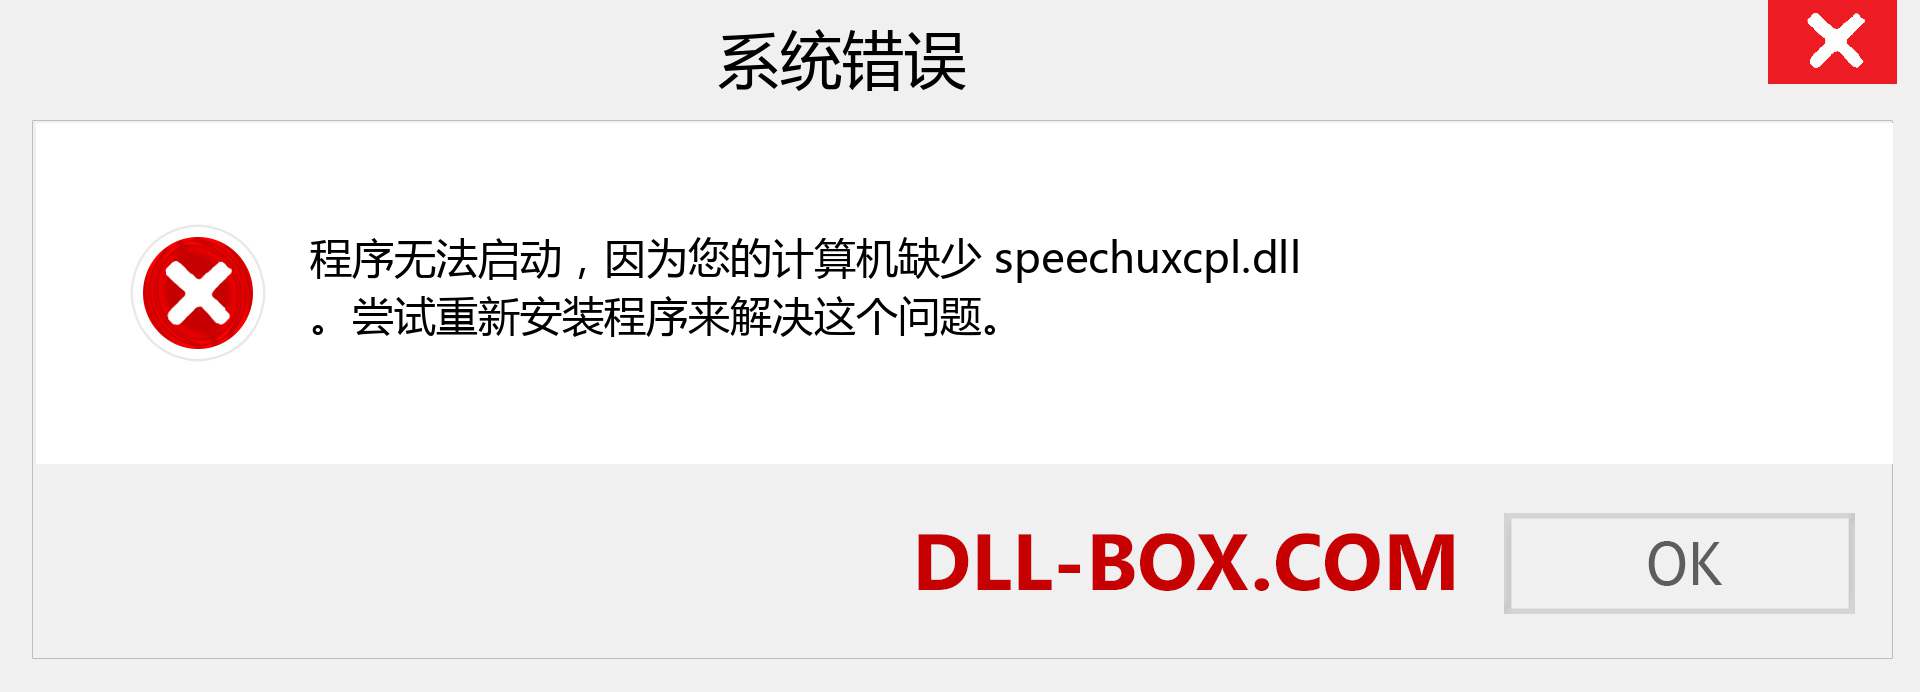 speechuxcpl.dll 文件丢失？。 适用于 Windows 7、8、10 的下载 - 修复 Windows、照片、图像上的 speechuxcpl dll 丢失错误